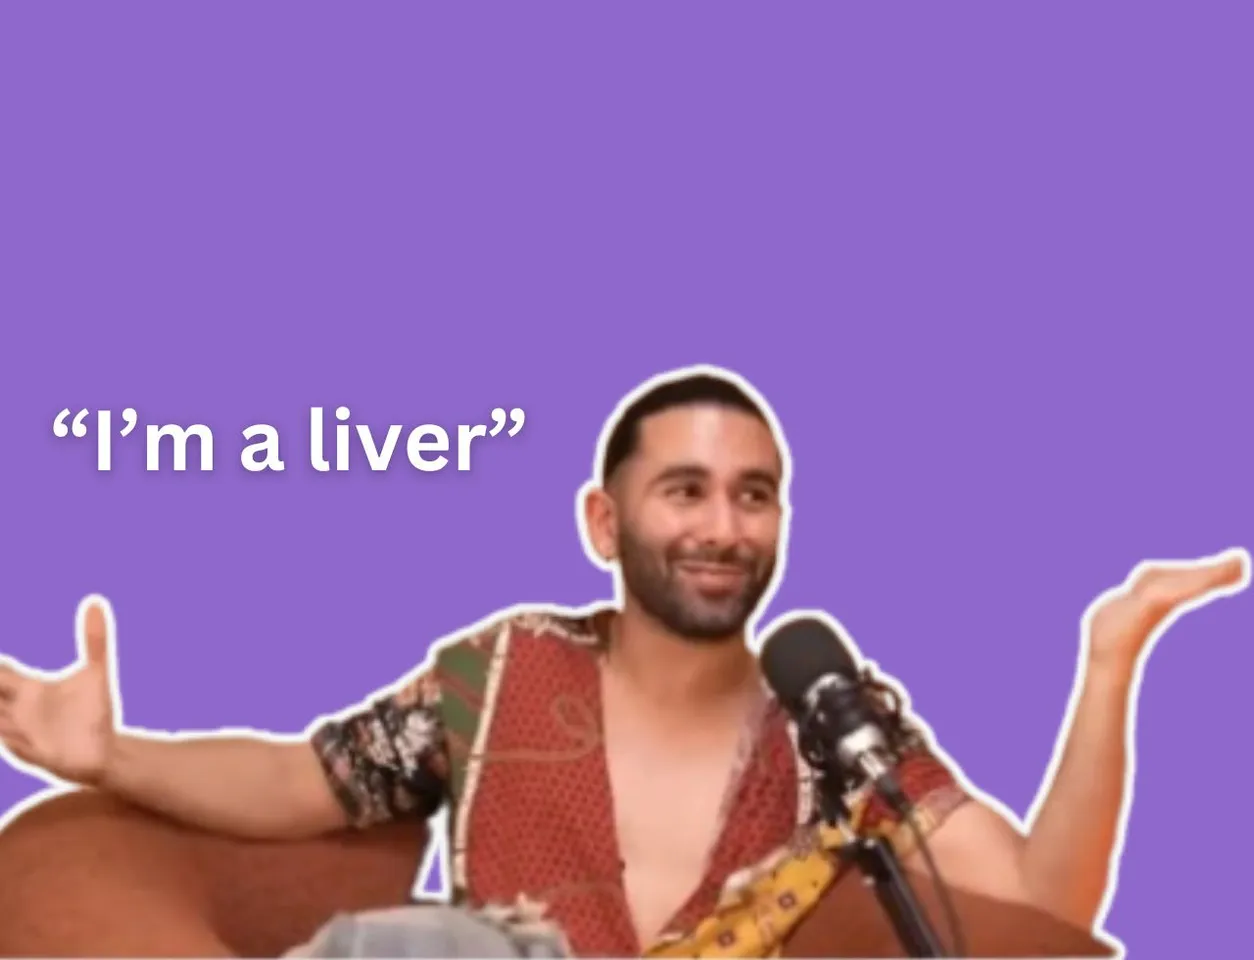 I’m a liver